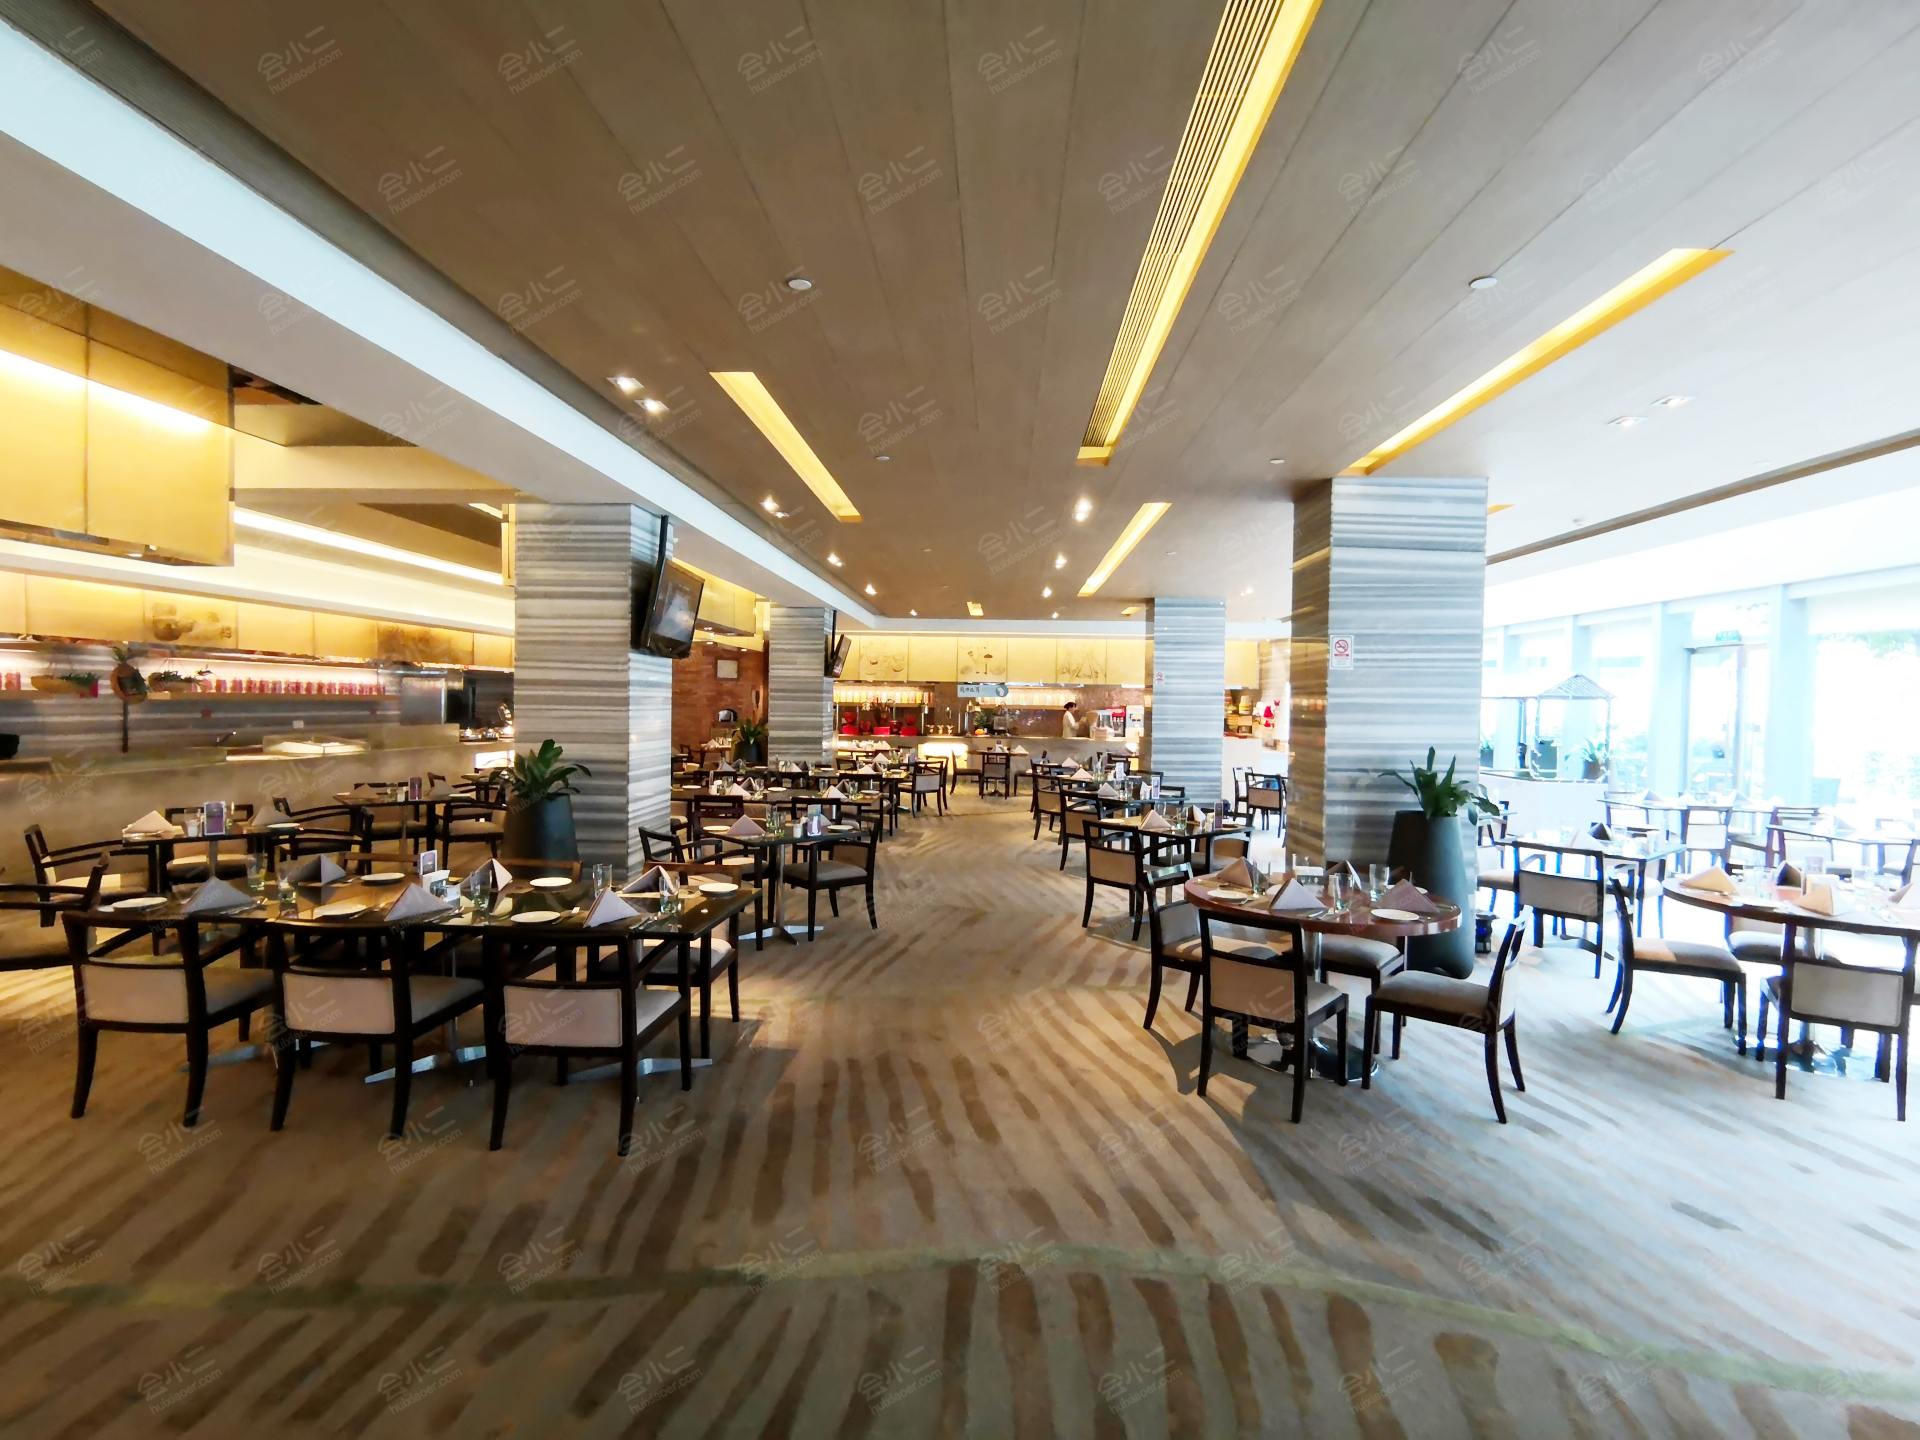 2023皇冠假日酒店51楼西餐厅美食餐厅,装修风格非常老派的奢华。 【...【去哪儿攻略】